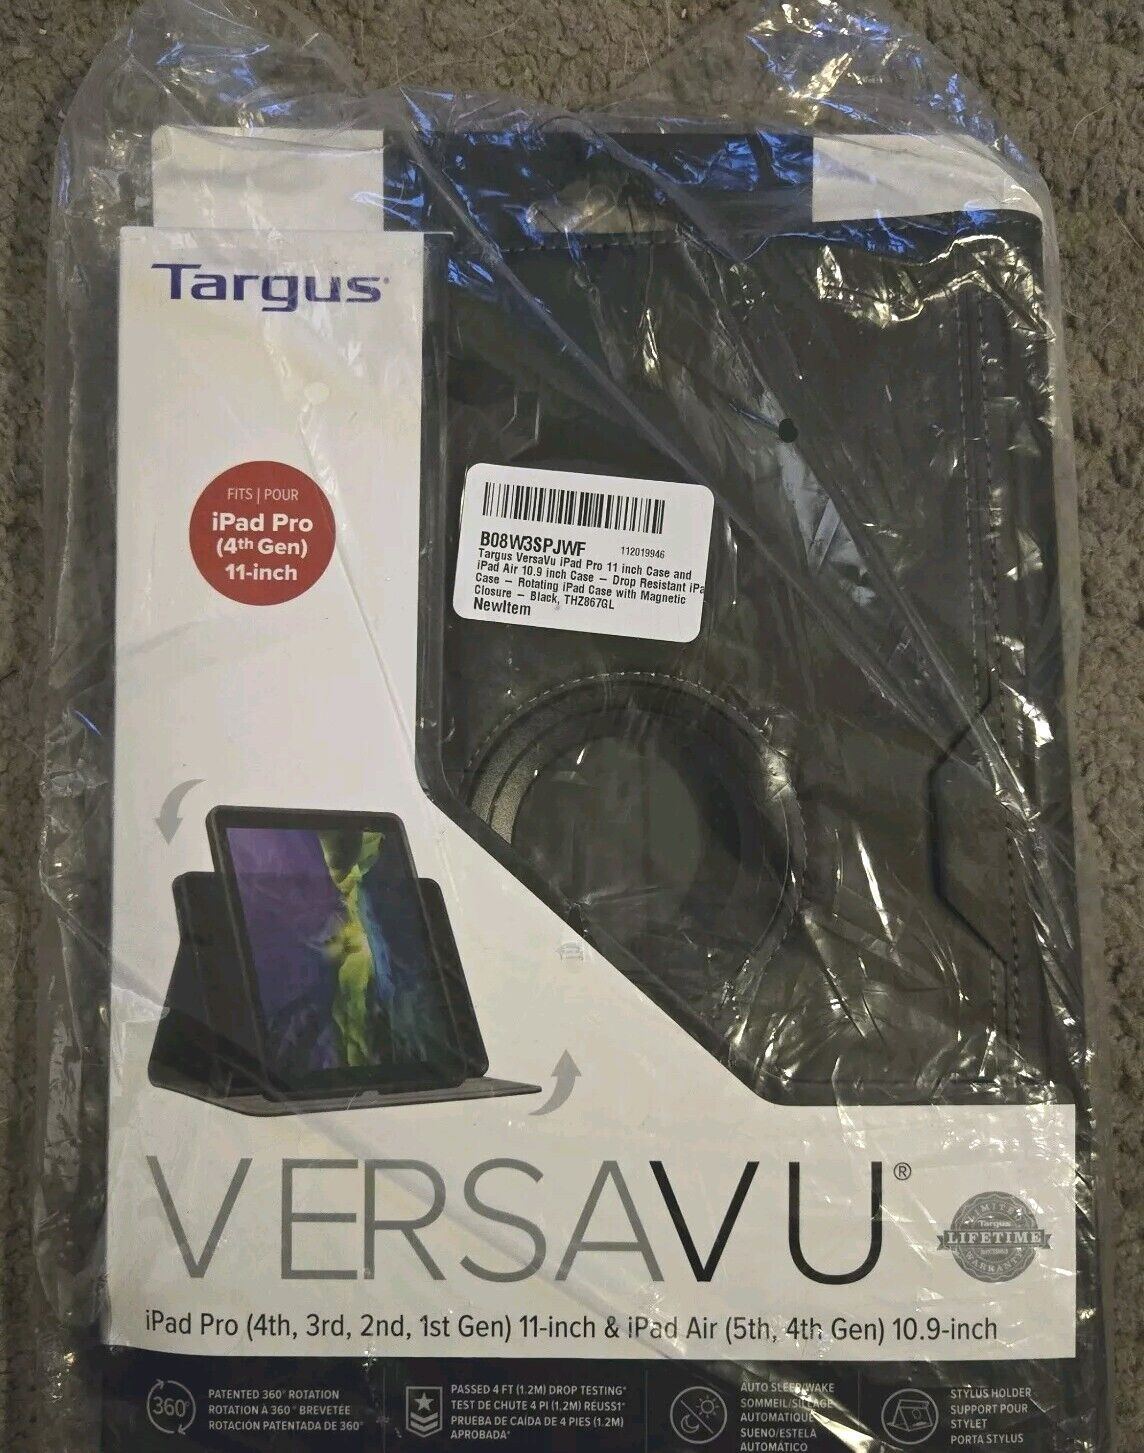 Targus VersaVu iPad Pro (4th Gen) iPad Air 4th 5th 10.9